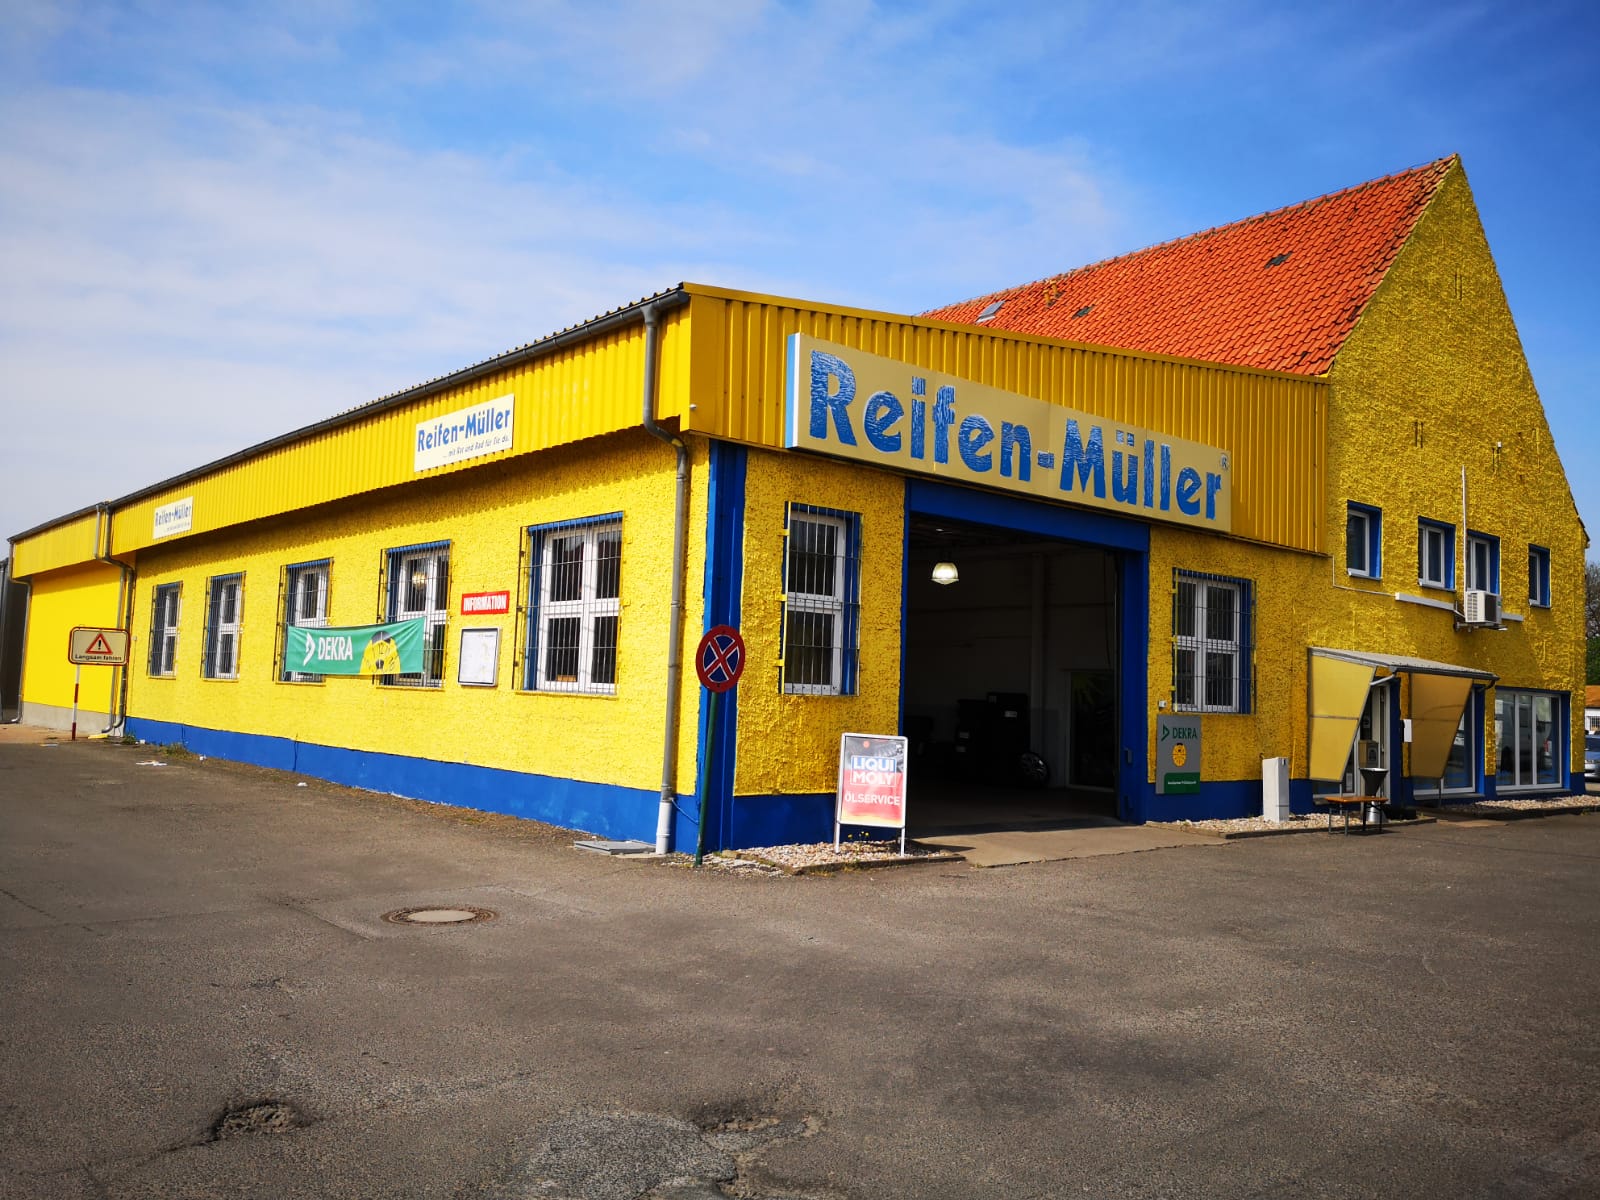 Bild 2 Reifen-Müller, Georg Müller GmbH & Co.KG in Oranienburg